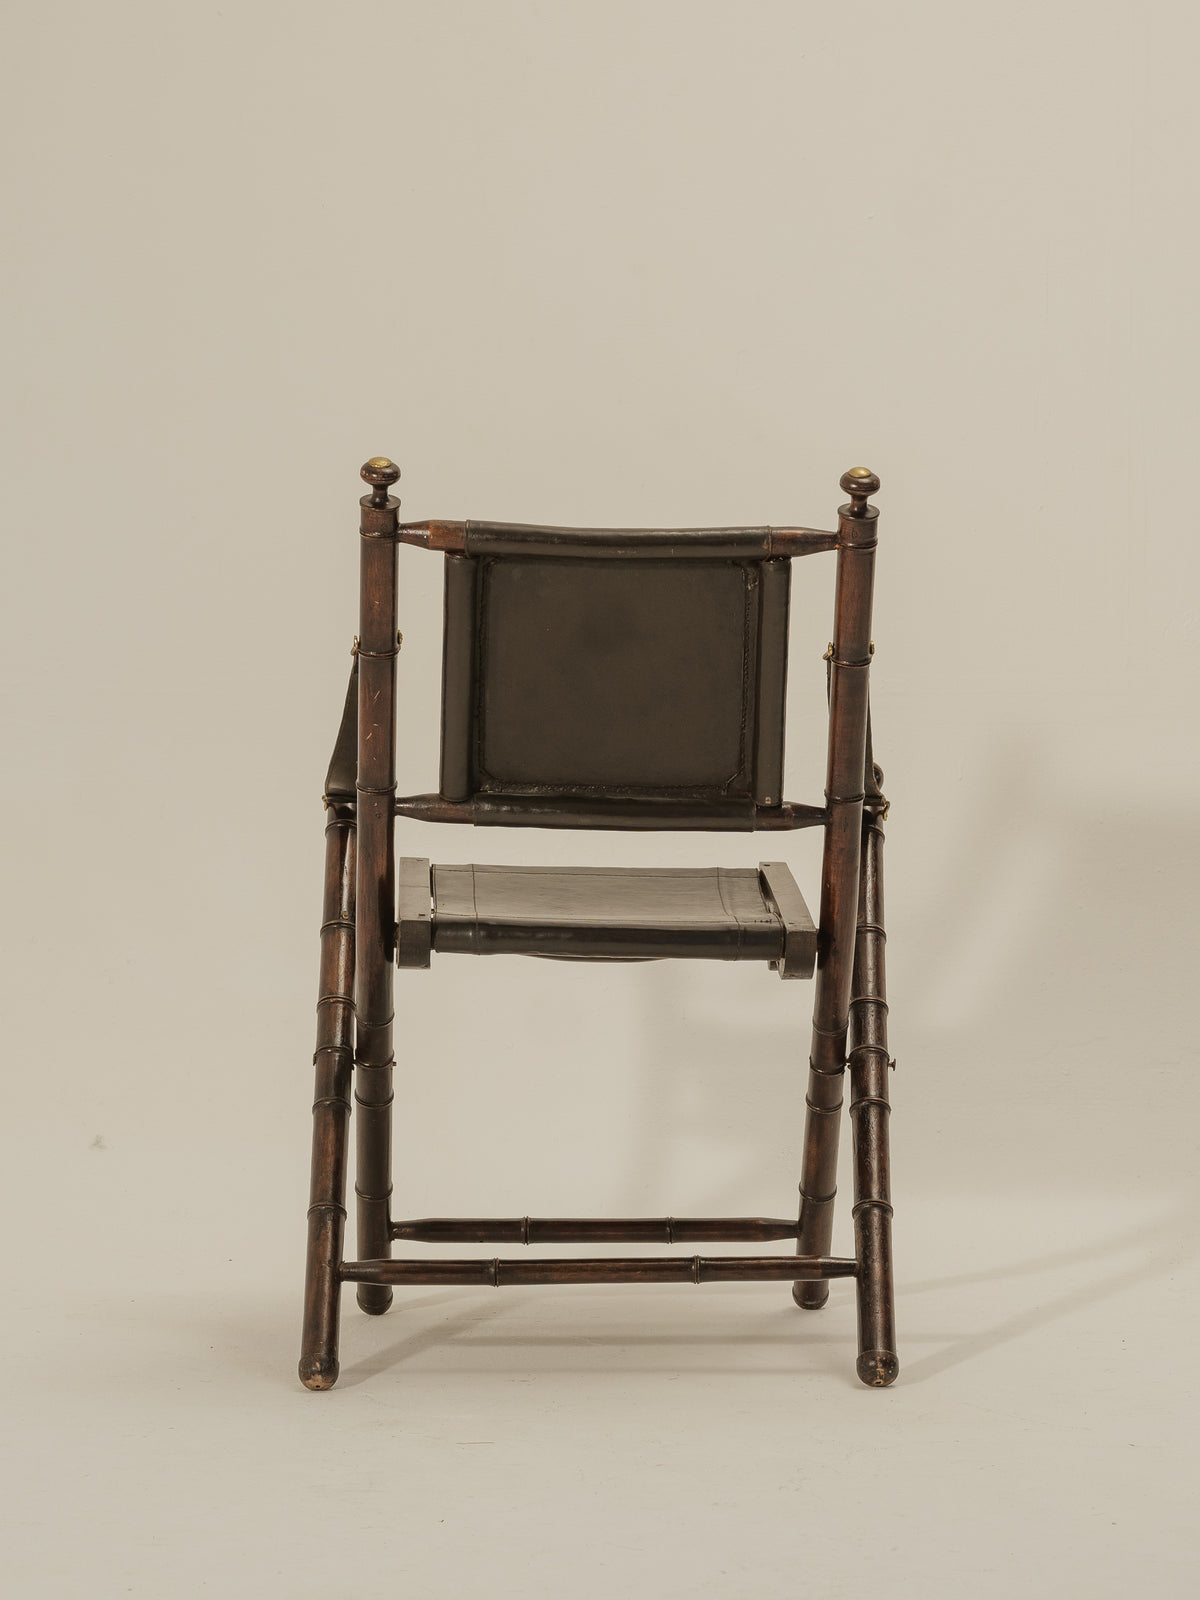 Folding Leather Safari Chair